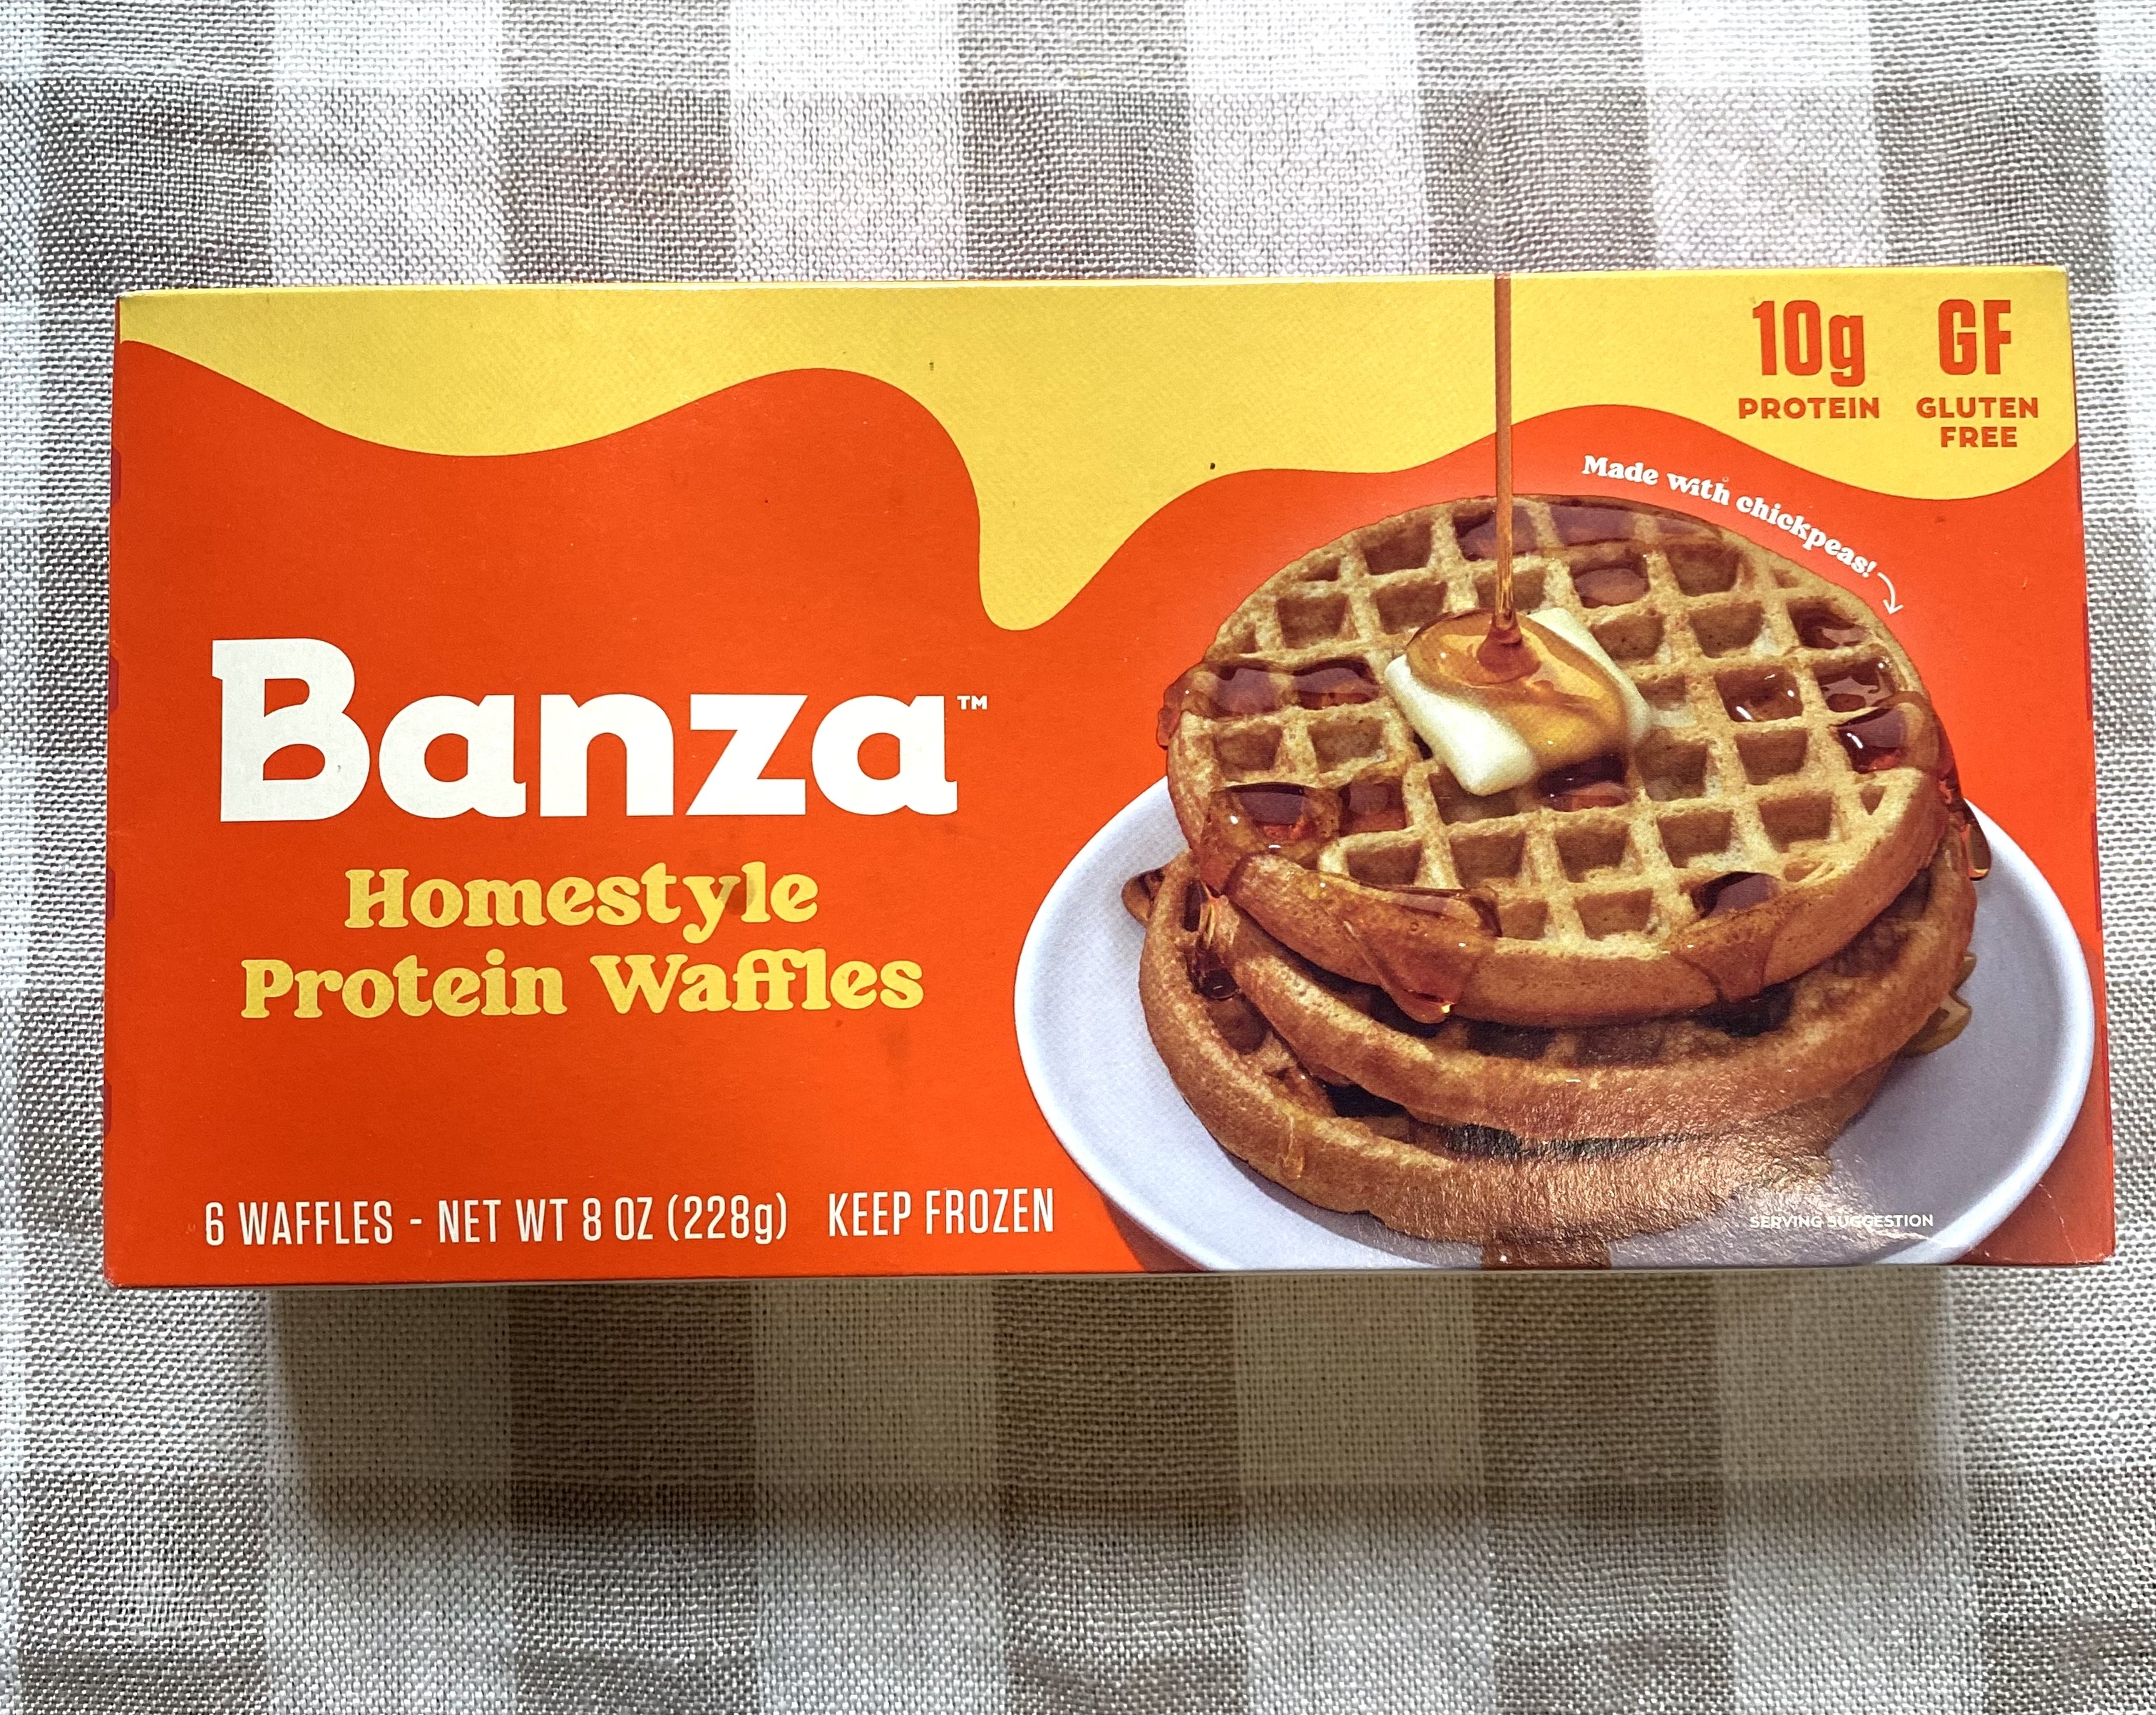 a box of banza waffles